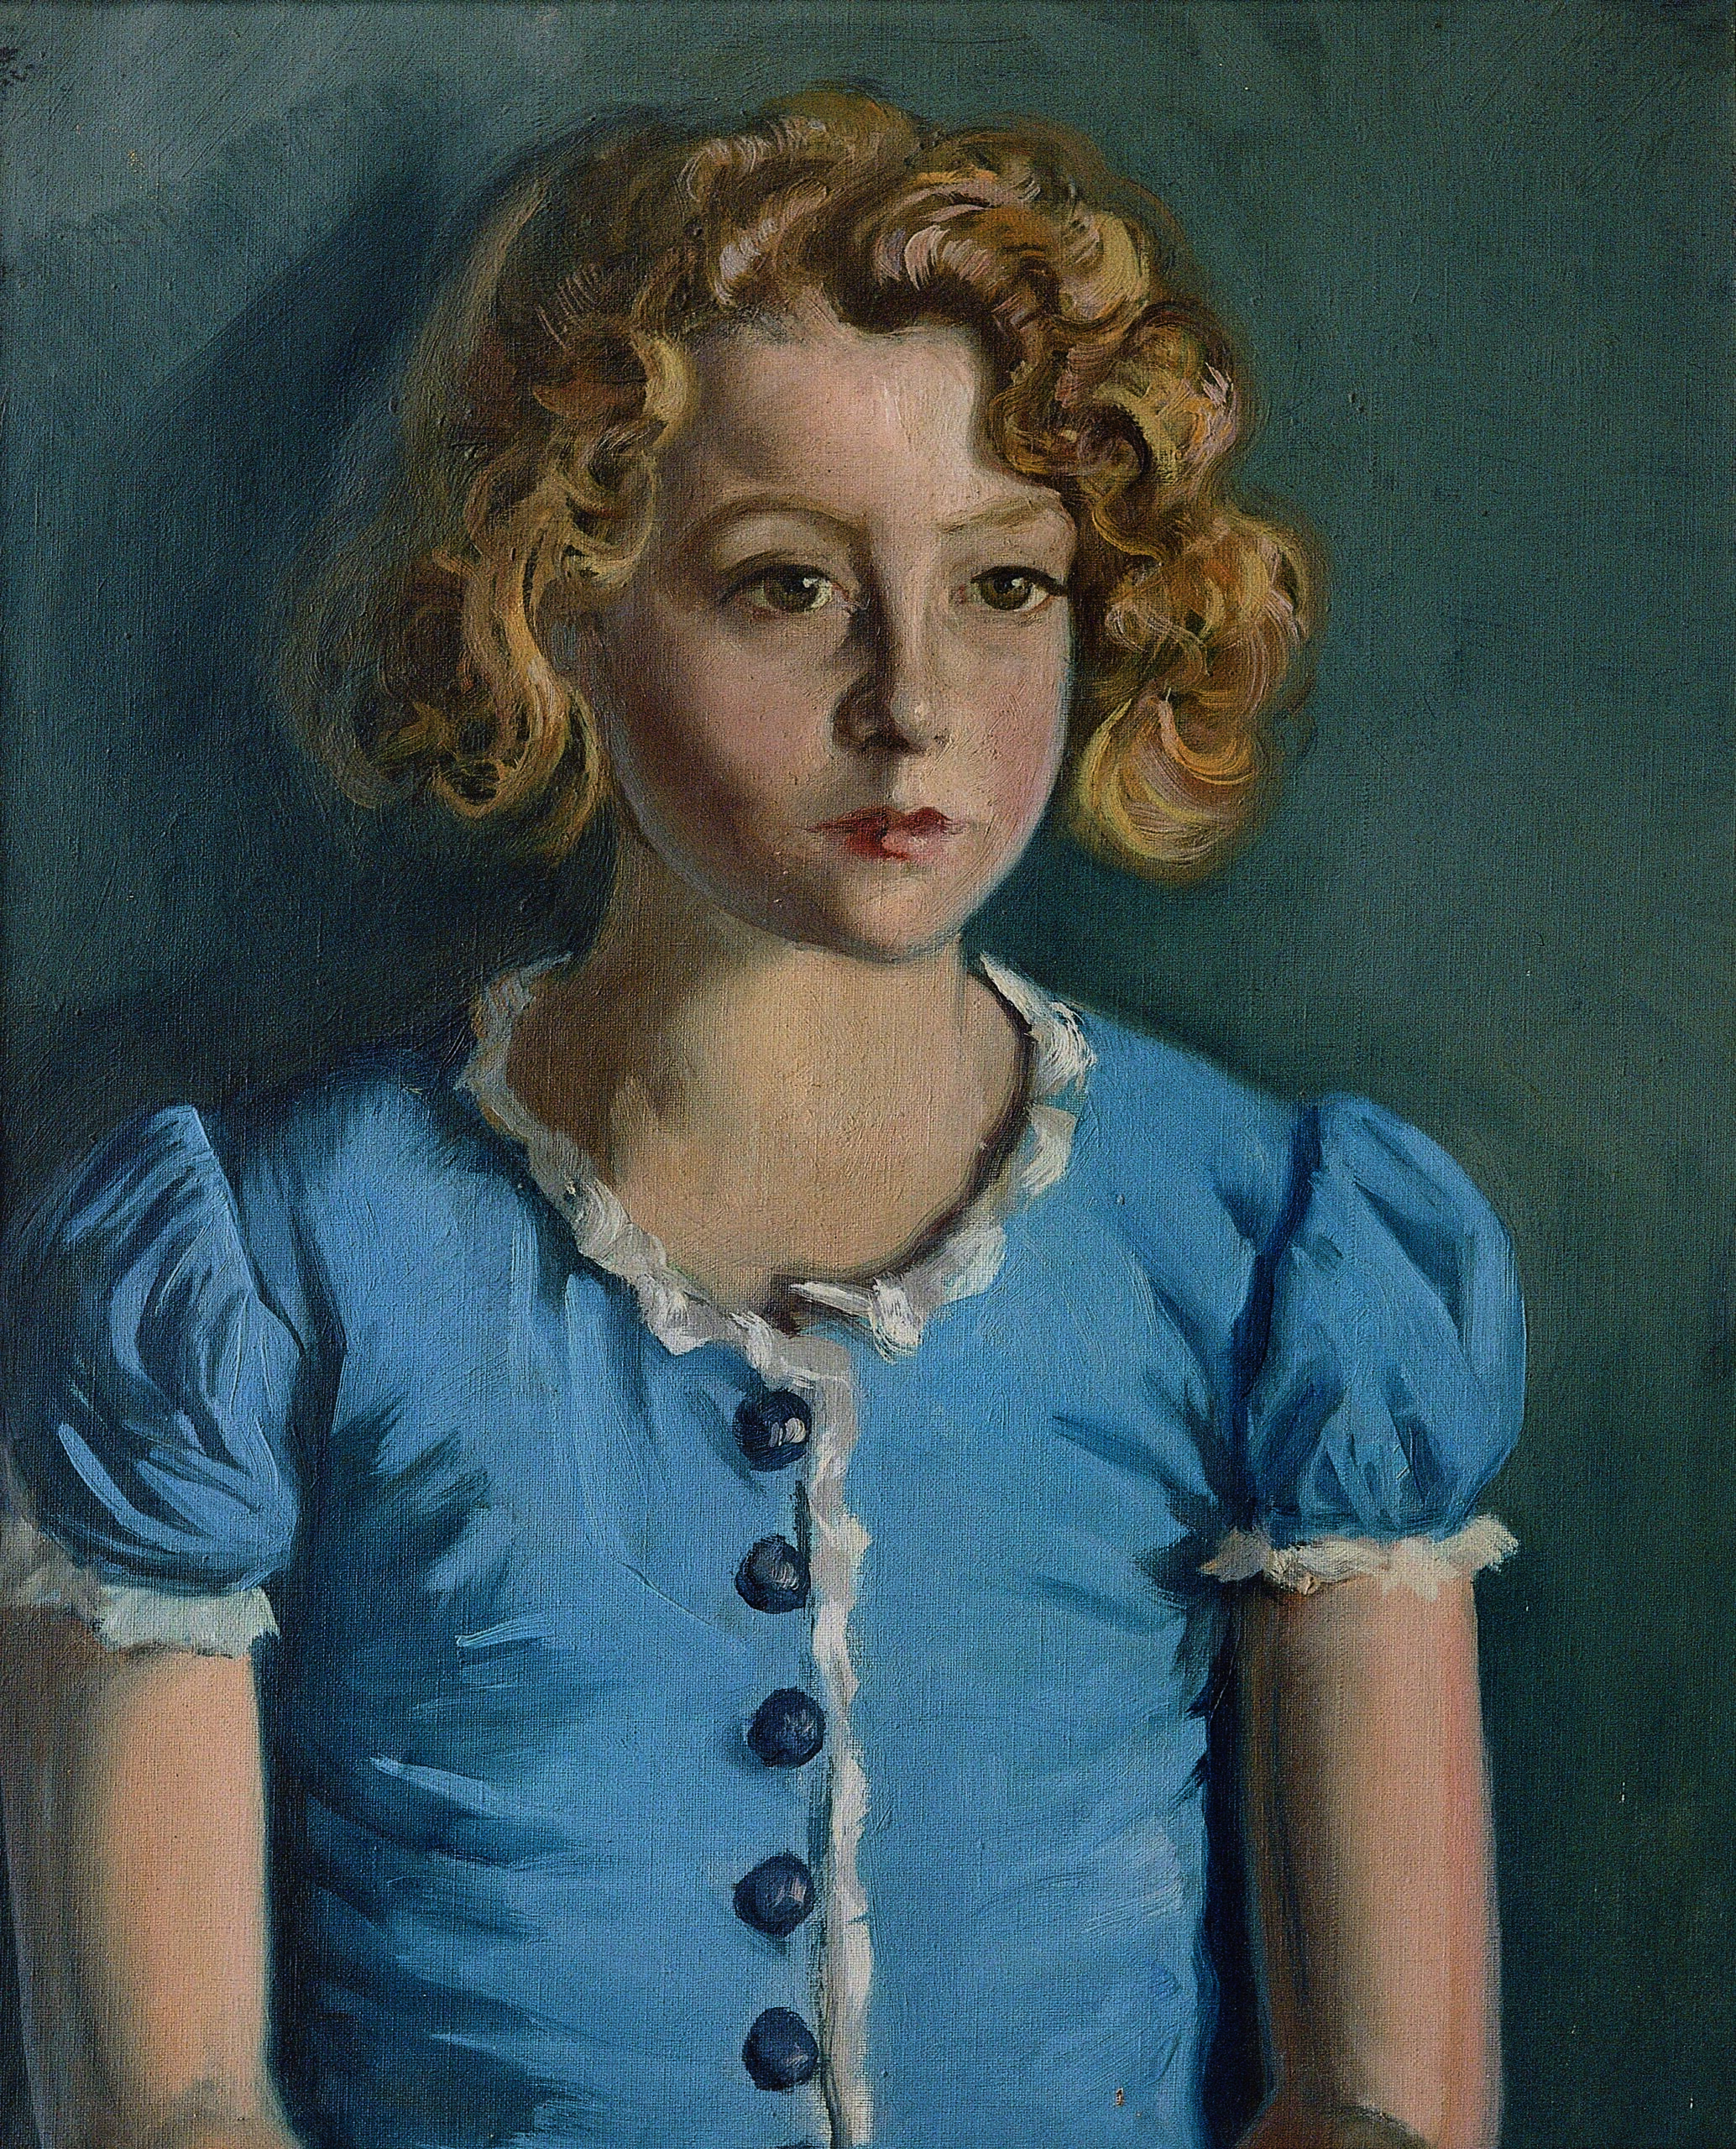 Pintura de José Manaut titulada Stella con vestido azul, 1948. Óleo sobre lienzo.